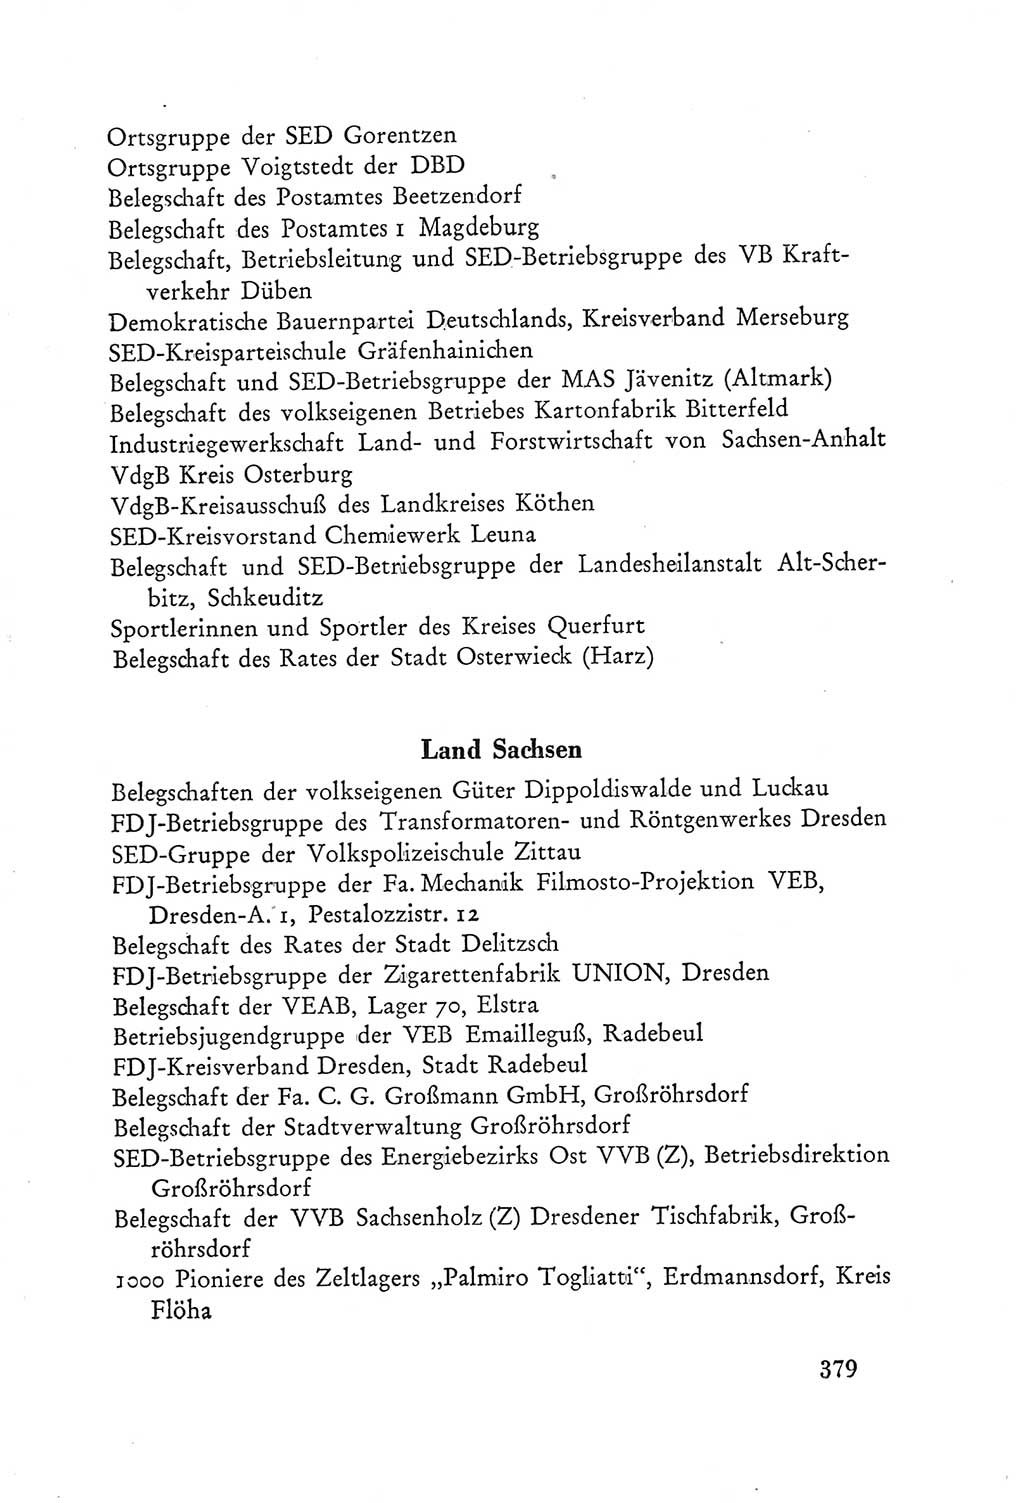 Protokoll der Verhandlungen des Ⅲ. Parteitages der Sozialistischen Einheitspartei Deutschlands (SED) [Deutsche Demokratische Republik (DDR)] 1950, Band 2, Seite 379 (Prot. Verh. Ⅲ. PT SED DDR 1950, Bd. 2, S. 379)